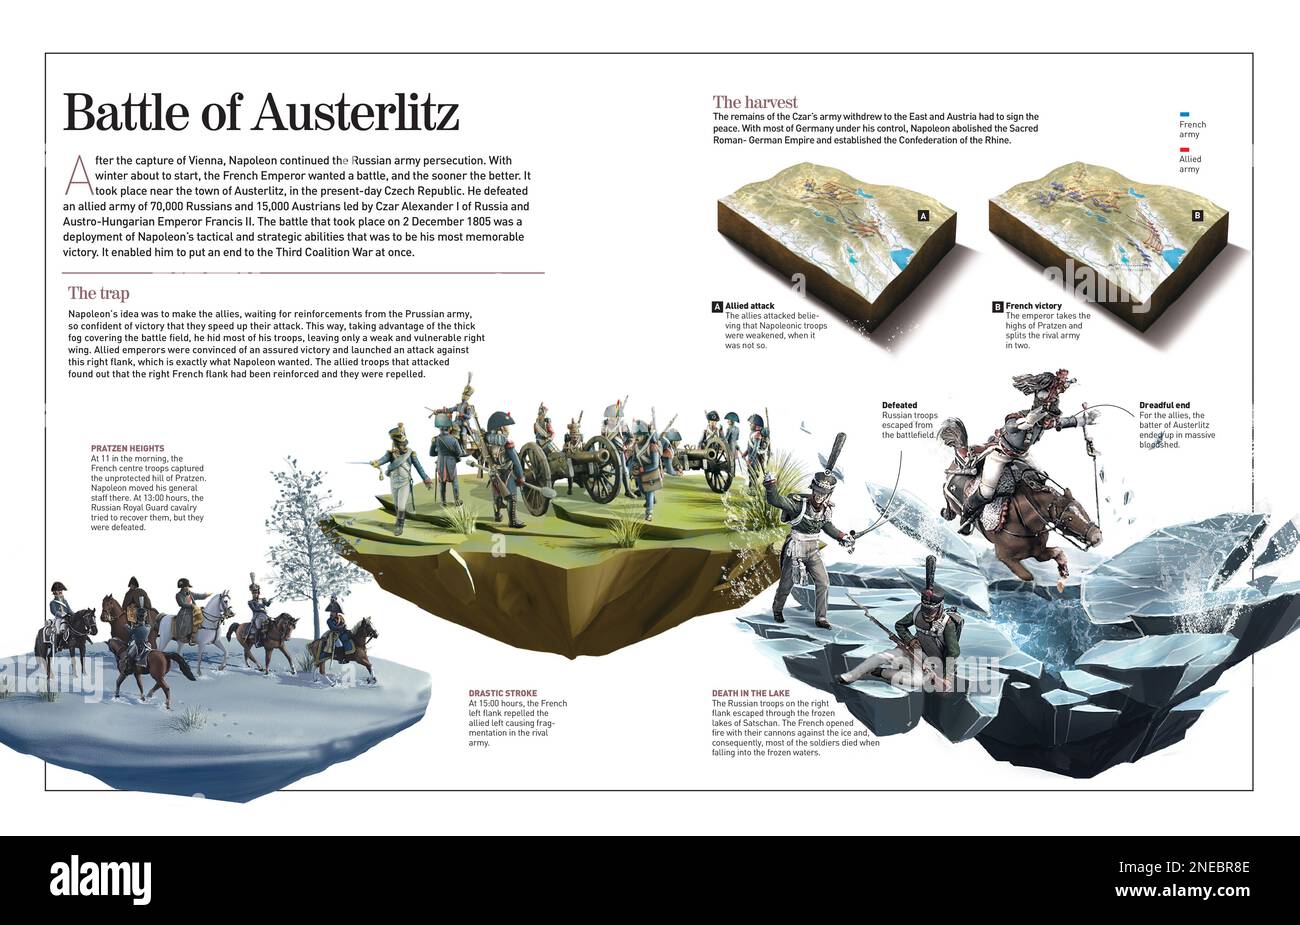 Infografik zur Schlacht von Austerlitz, einem der wichtigsten Siege Napoleons. Das französische Reich besiegte die russisch-österreichische Armee und zerstörte die Dritte Koalition. [Adobe InDesign (.indd); 4960x3188]. Stockfoto